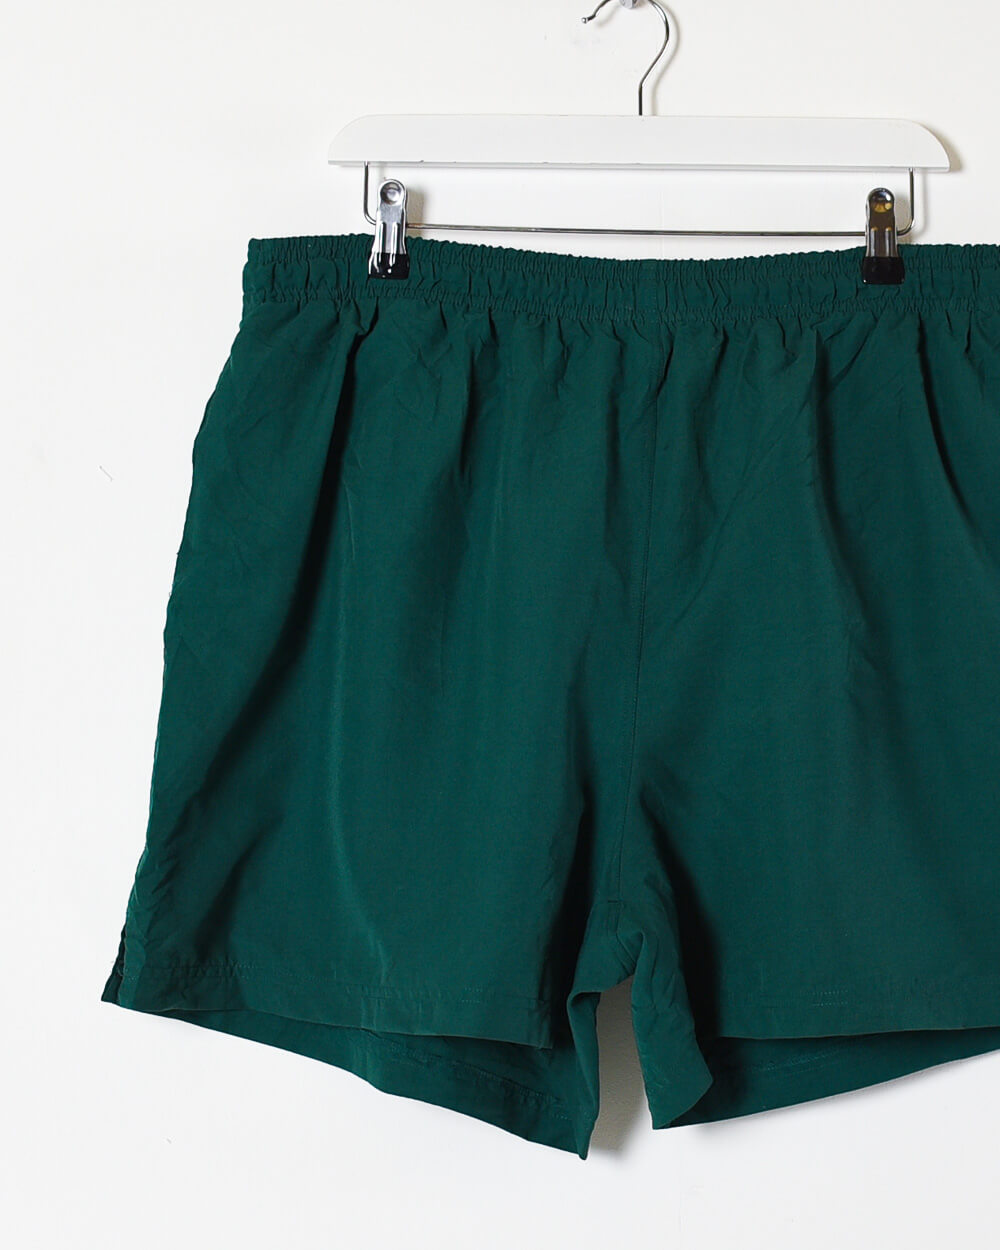 Green Adidas Shorts - X-Large